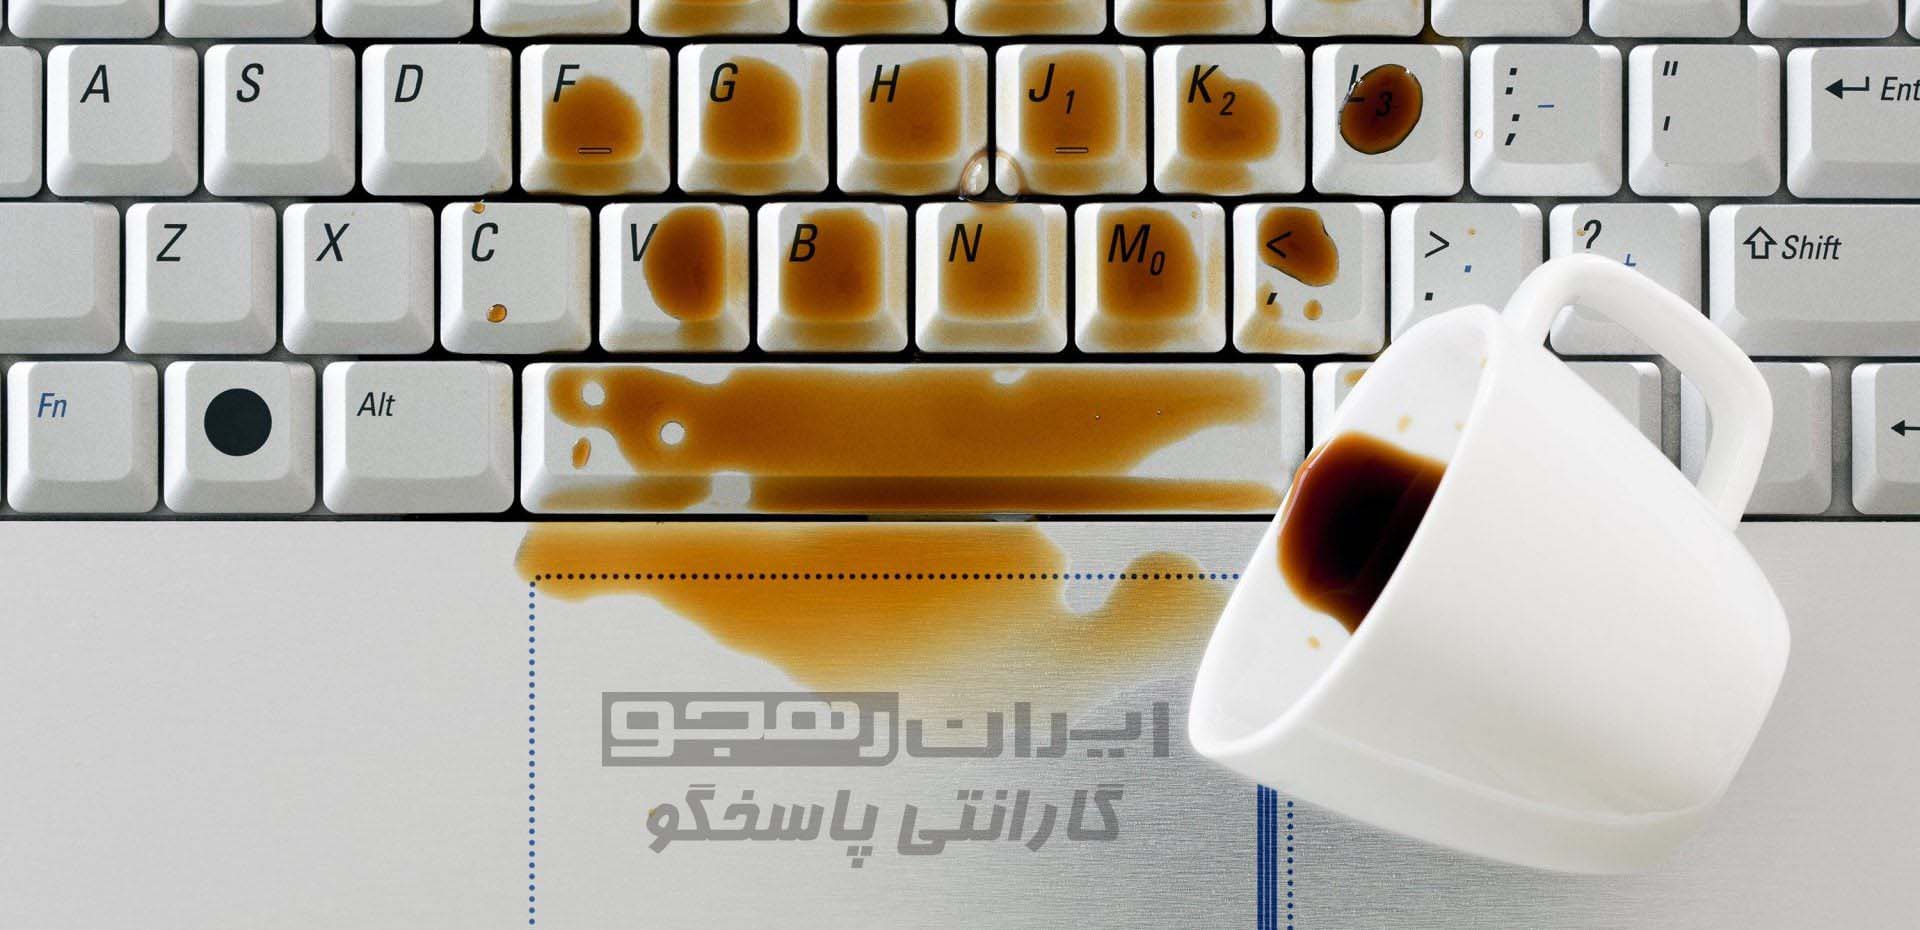 ریختن مایعات بر روی لپ تاپ.jpg